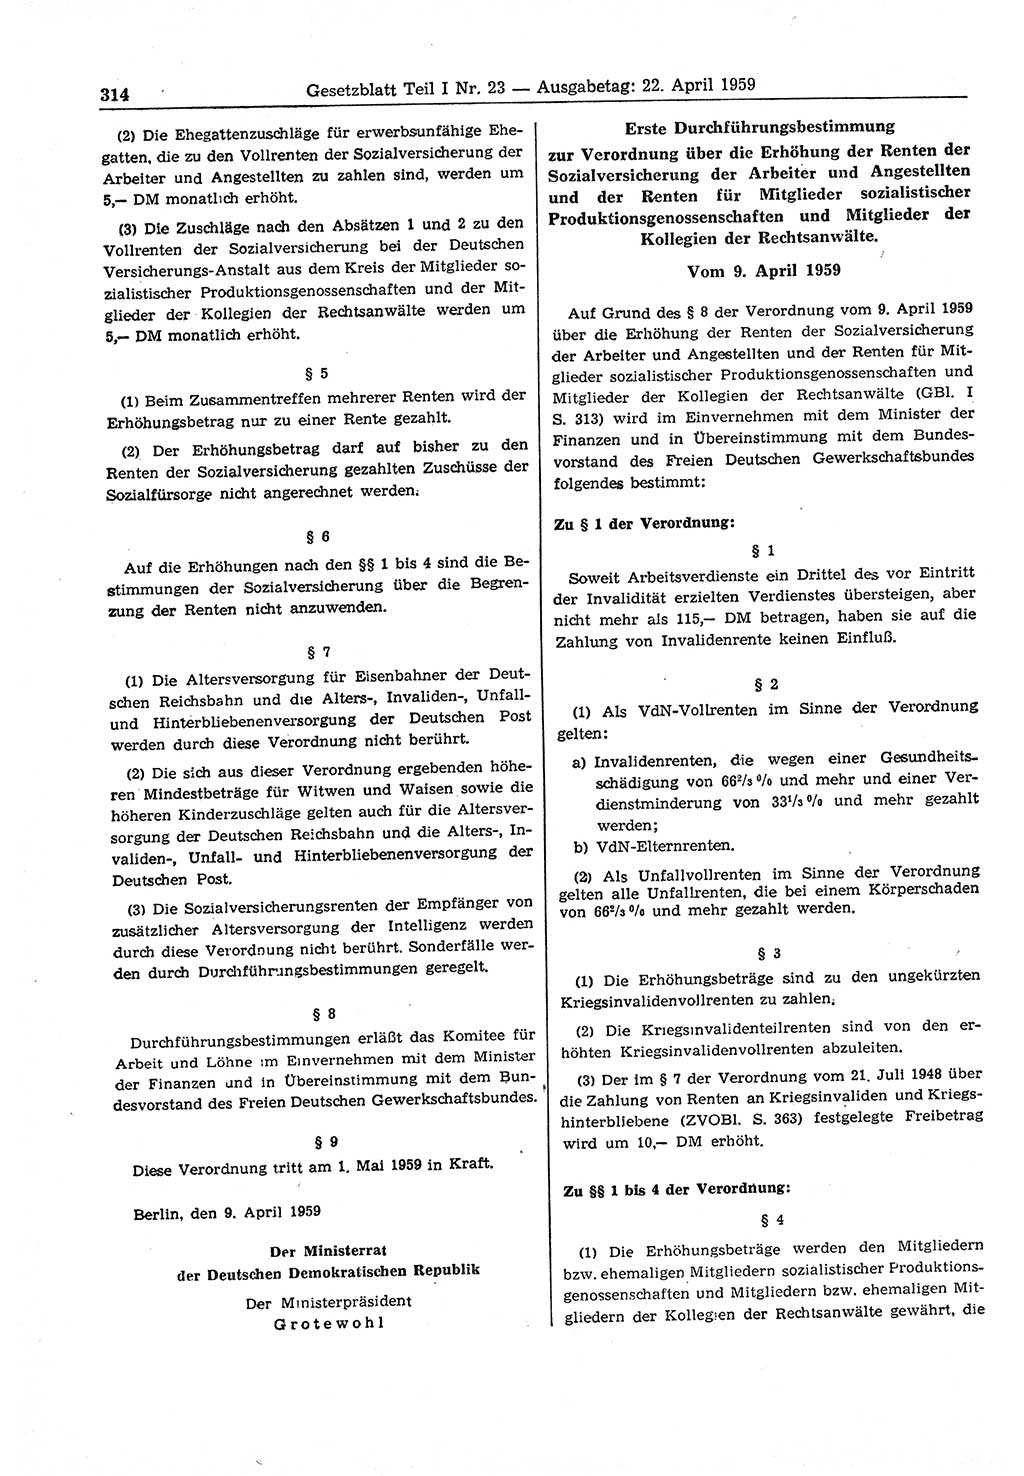 Gesetzblatt (GBl.) der Deutschen Demokratischen Republik (DDR) Teil Ⅰ 1959, Seite 314 (GBl. DDR Ⅰ 1959, S. 314)